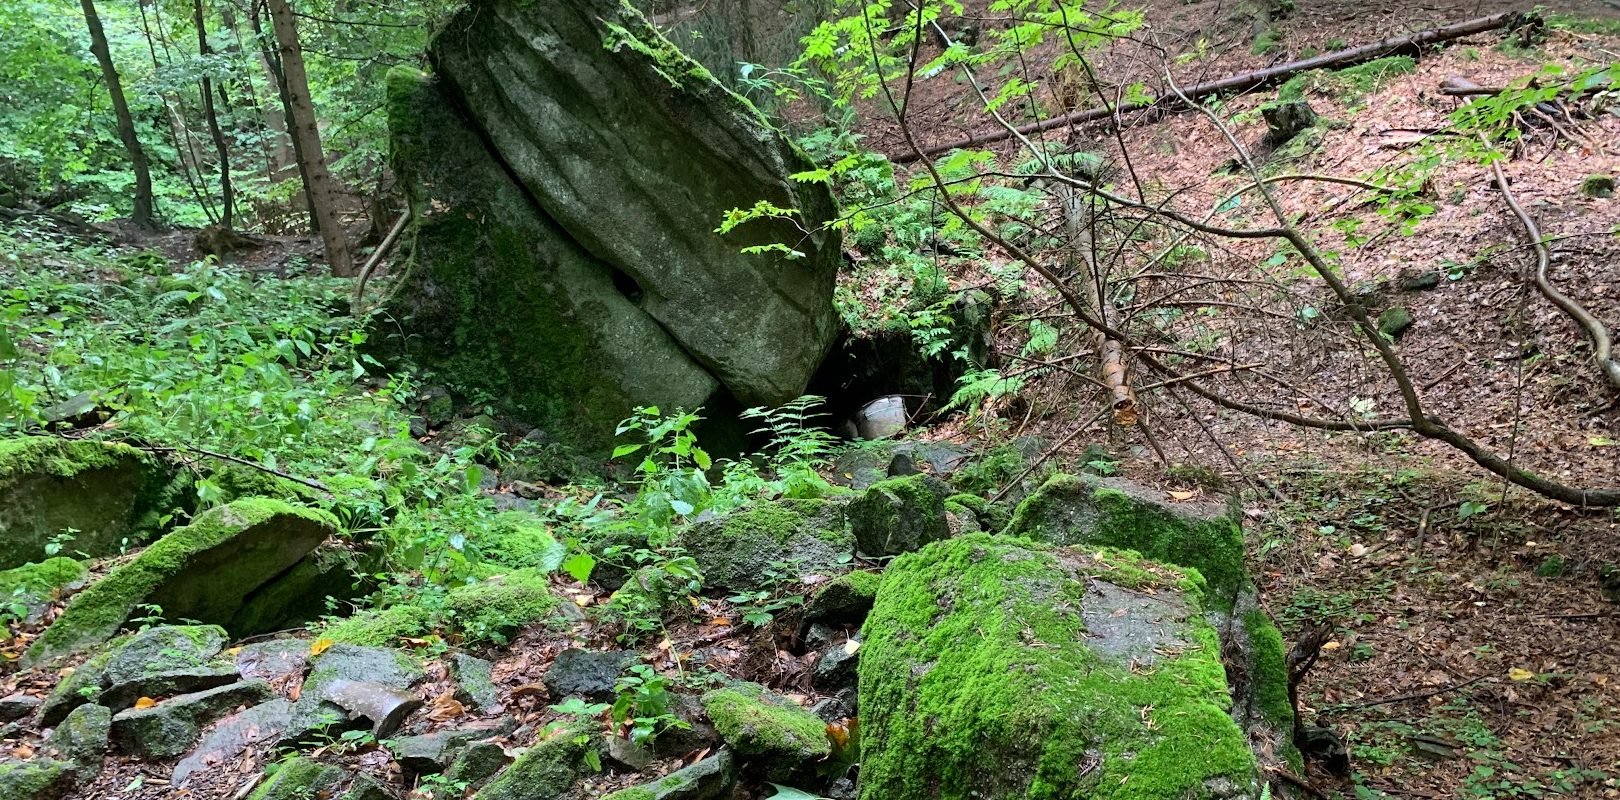 Skalne ciekawostki Beskidu Małego. Kamienie, ostańce, wychodnie skalne, jaskinie, groty, wodospady.